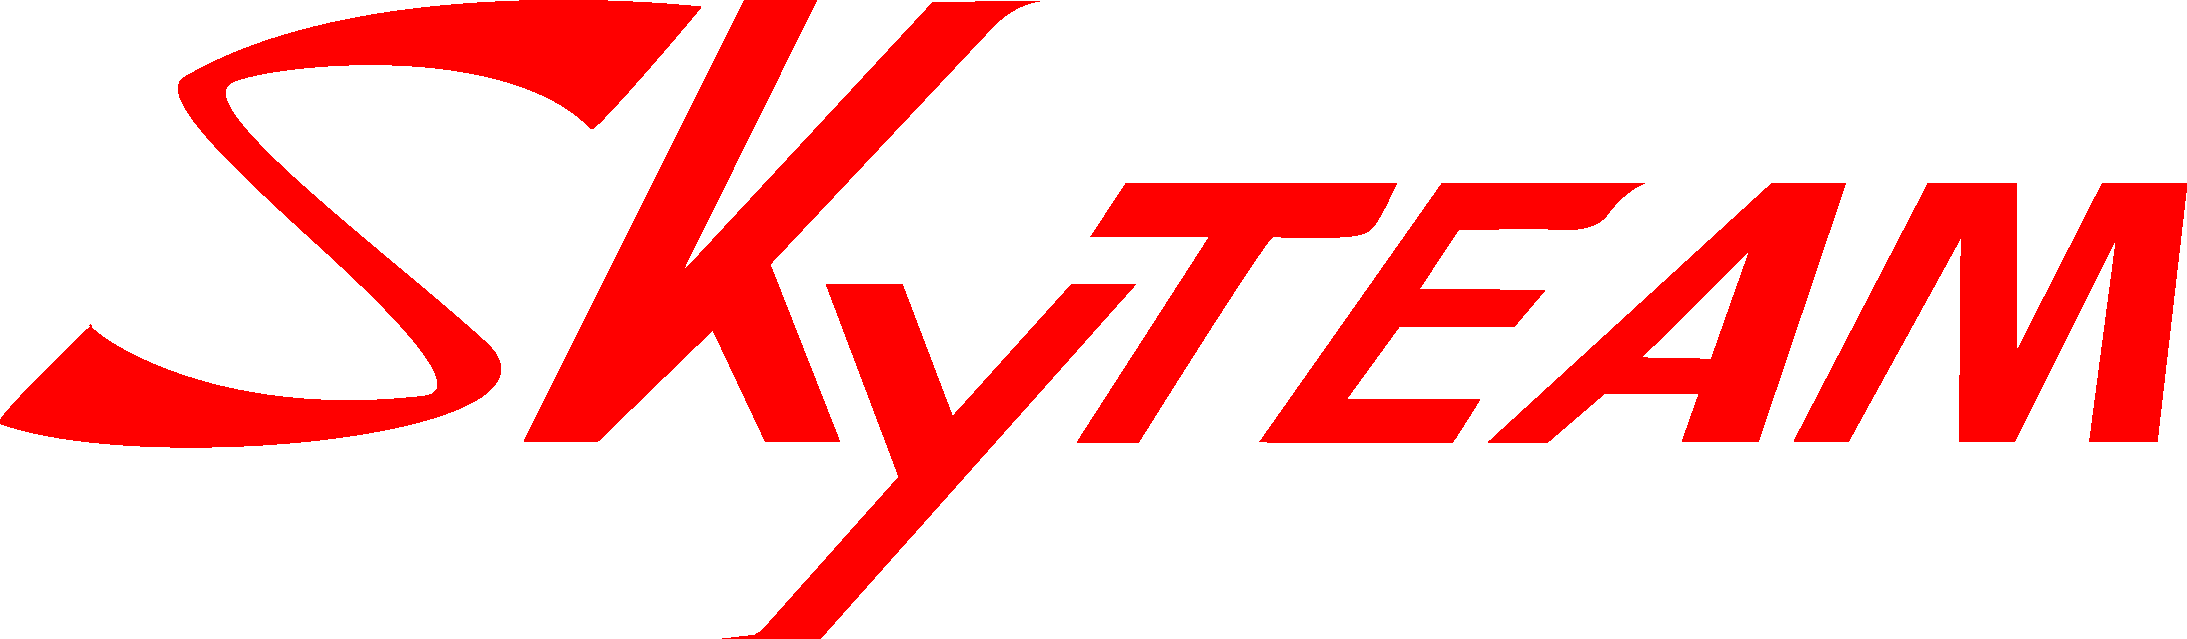 Logo Skyteam